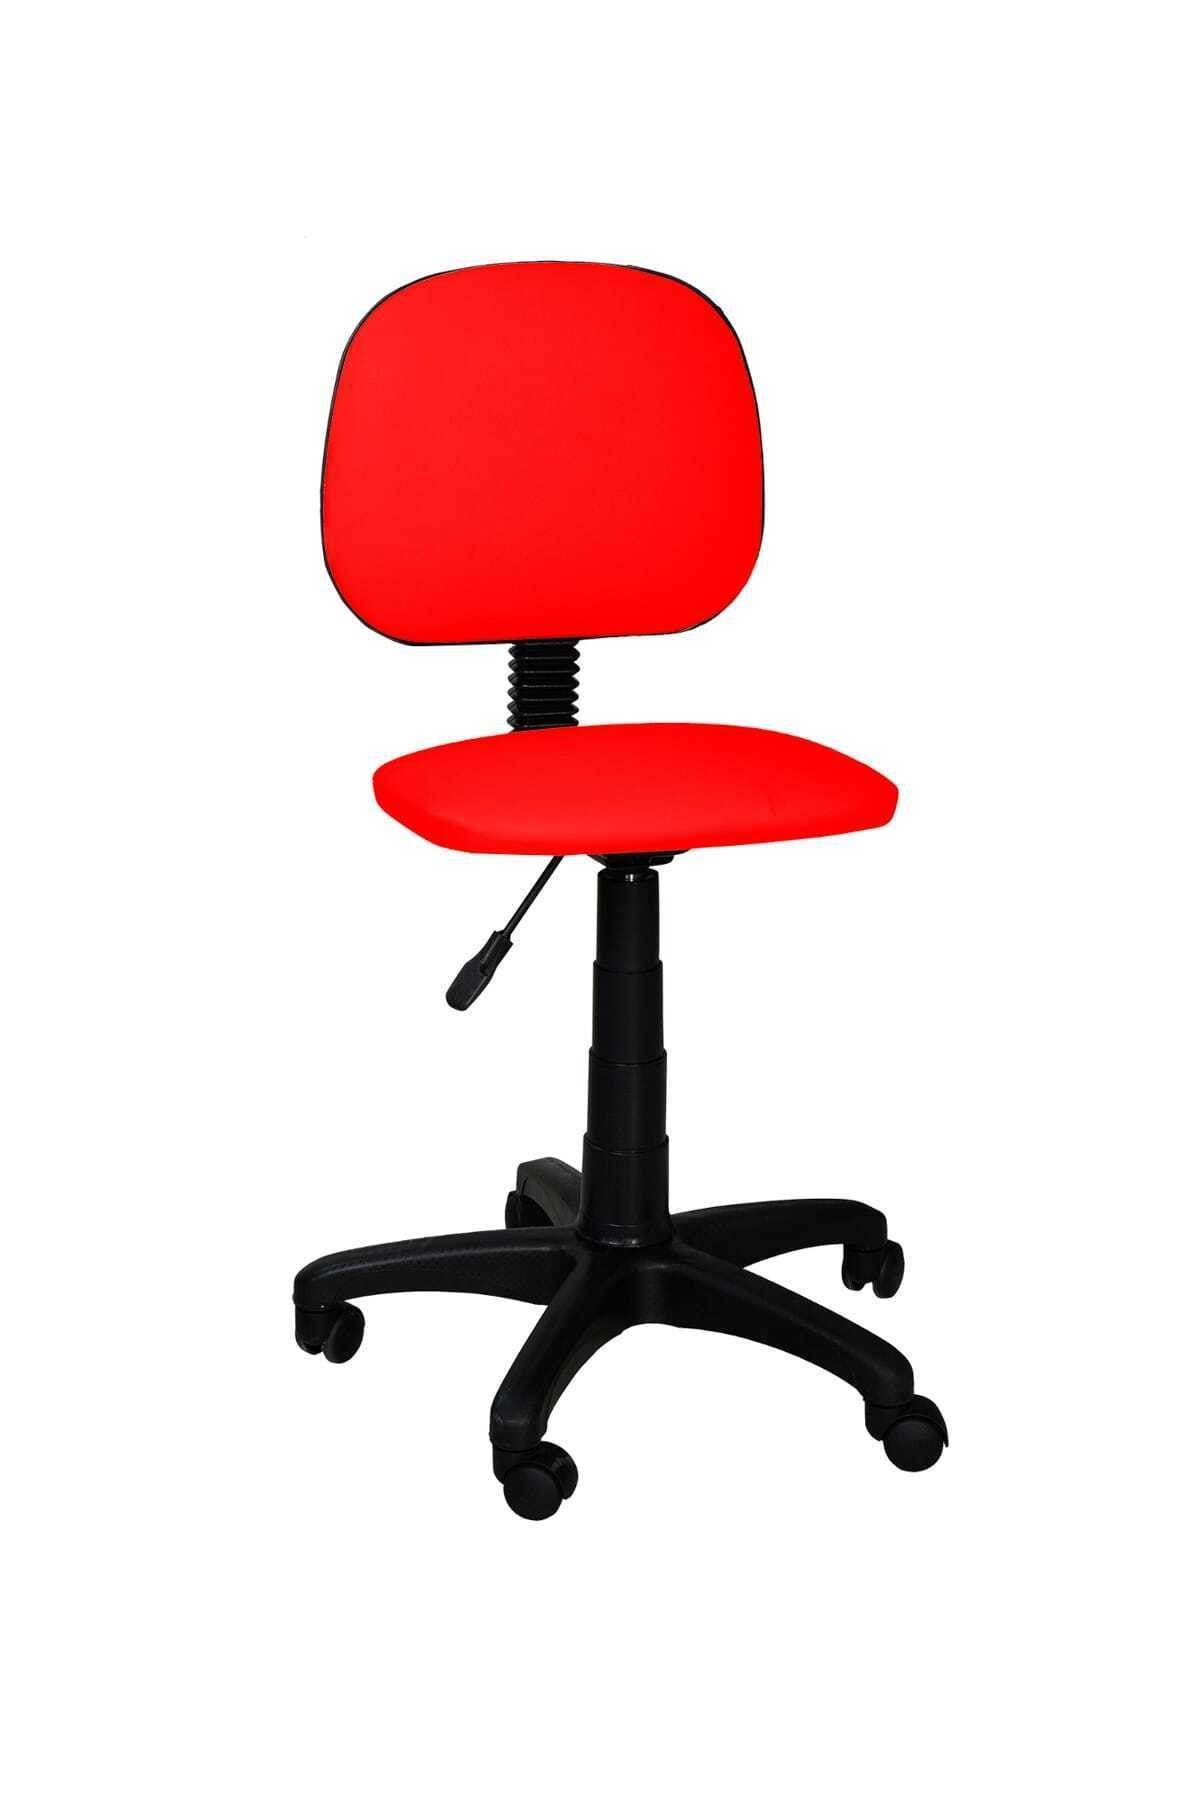 TOMAR Cgn Kolsuz Çalışma Sandalyesi Sekreter Koltuğu Öğrenci Sandalyesi Ofis Ve Büro Sandalyesi - Kırmızı